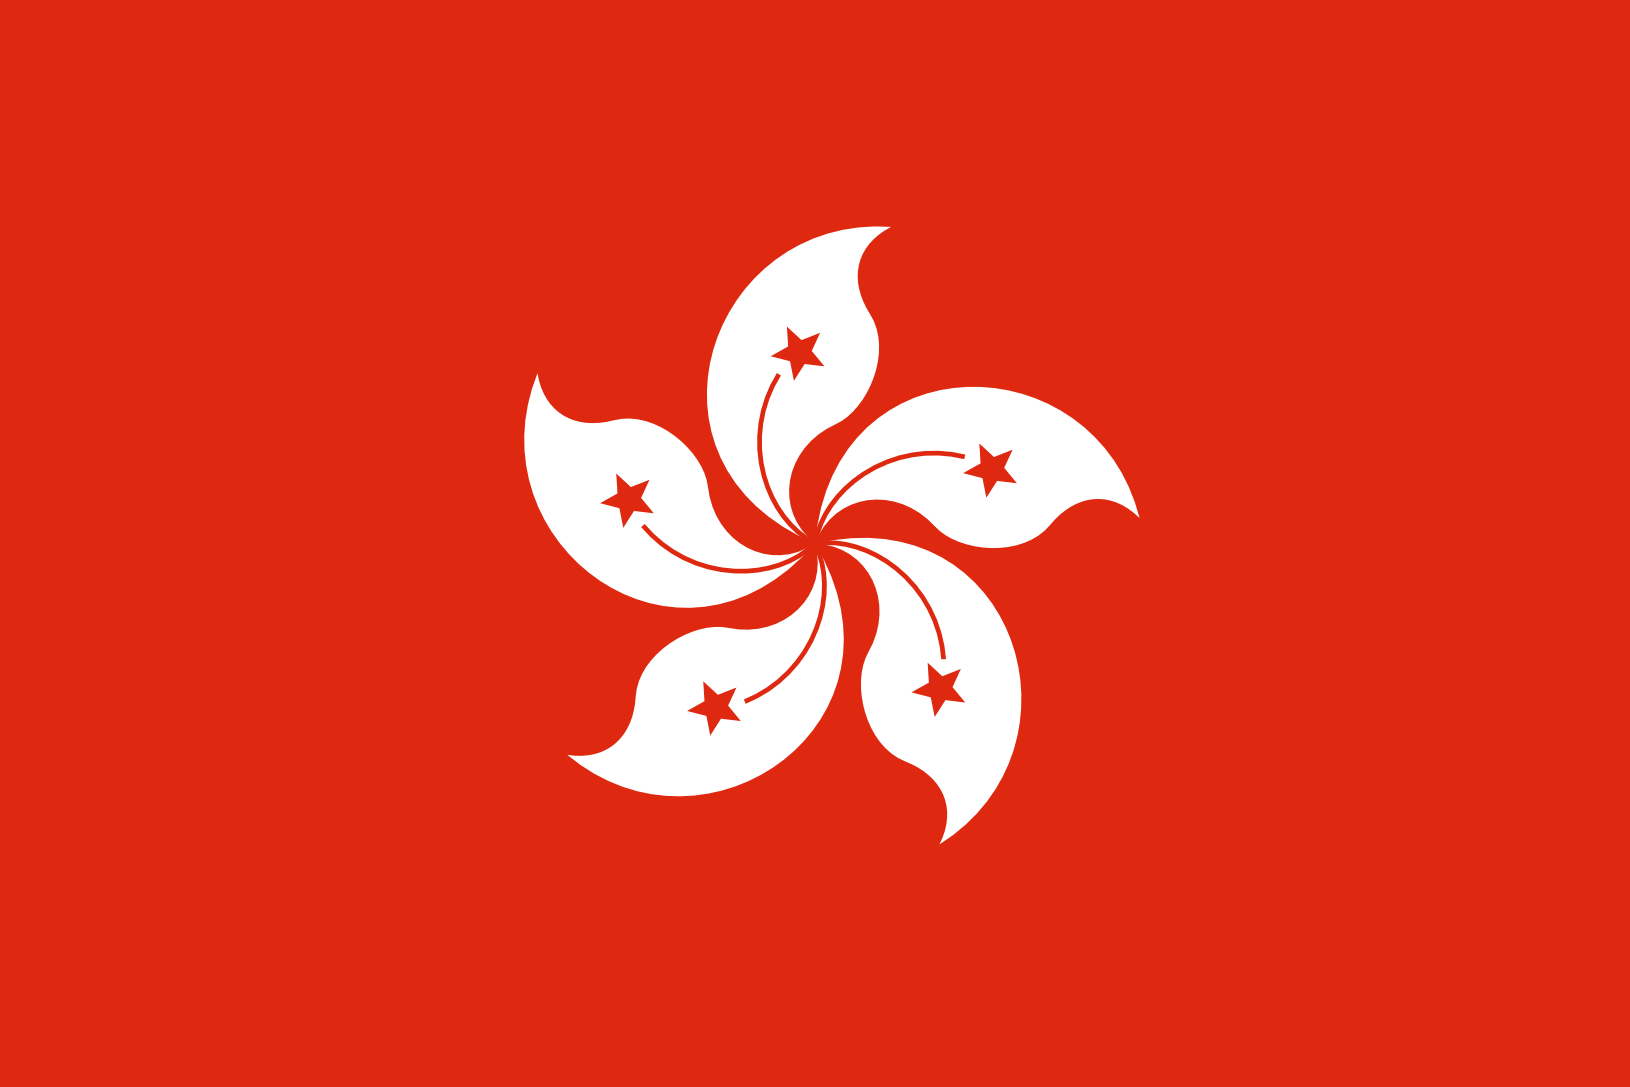 Podoba nacionalno zastavo države Hong Kong v resoluciji 1630x1087